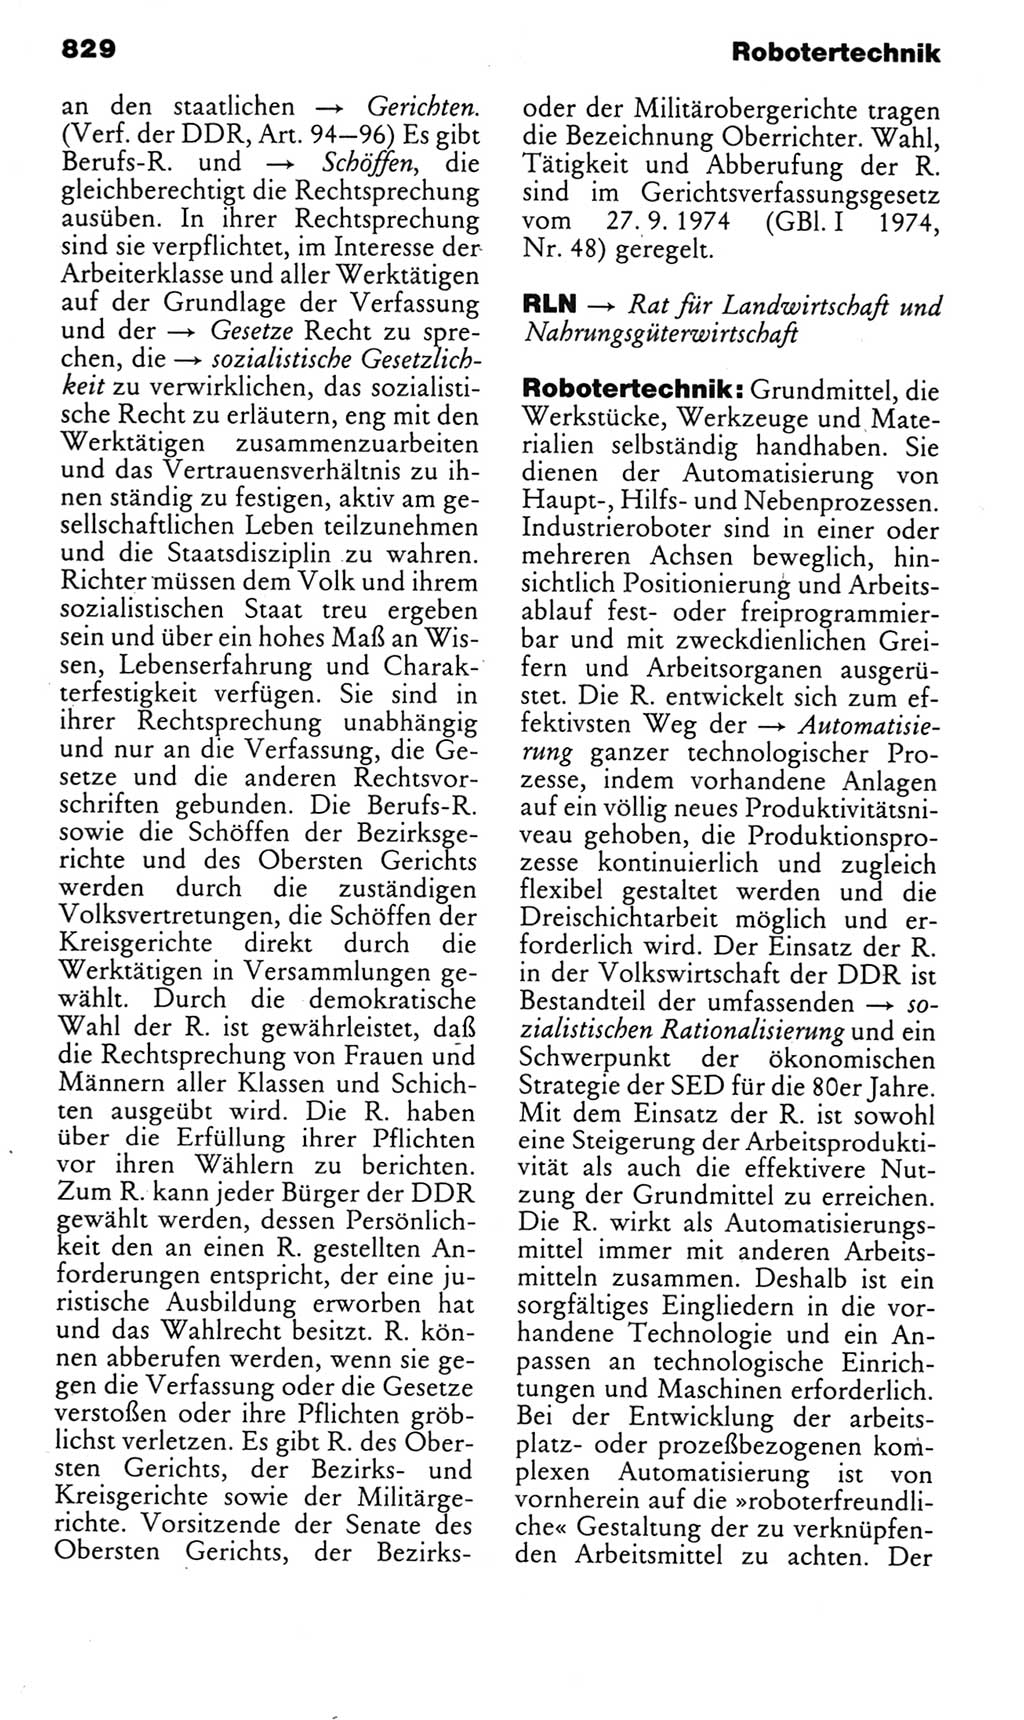 Kleines politisches Wörterbuch [Deutsche Demokratische Republik (DDR)] 1985, Seite 829 (Kl. pol. Wb. DDR 1985, S. 829)